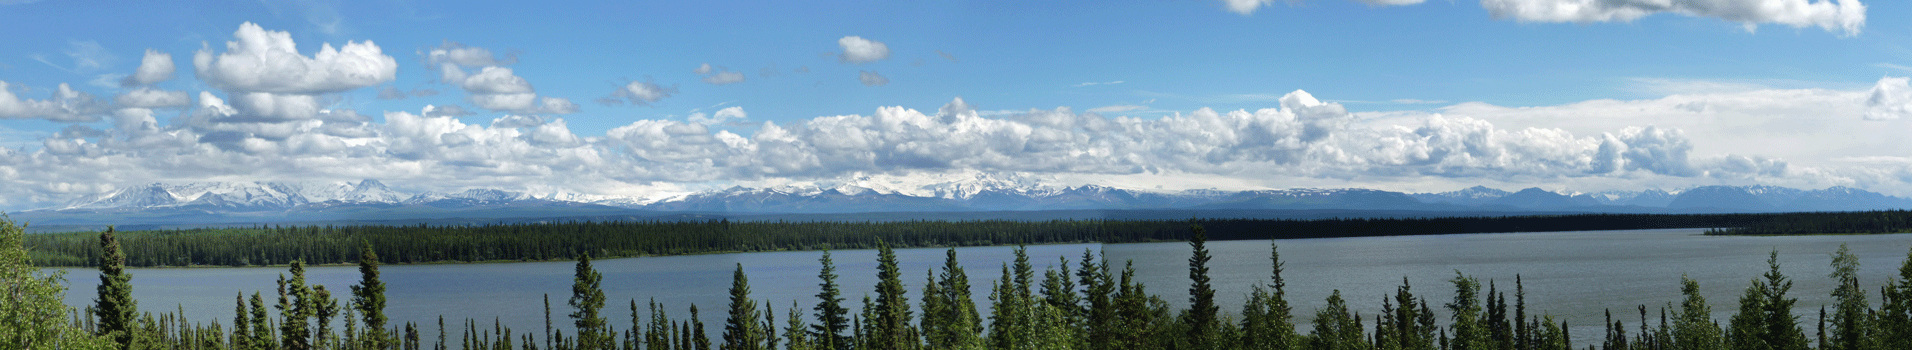 Wrangell Mountains and Willow Lake Alaska